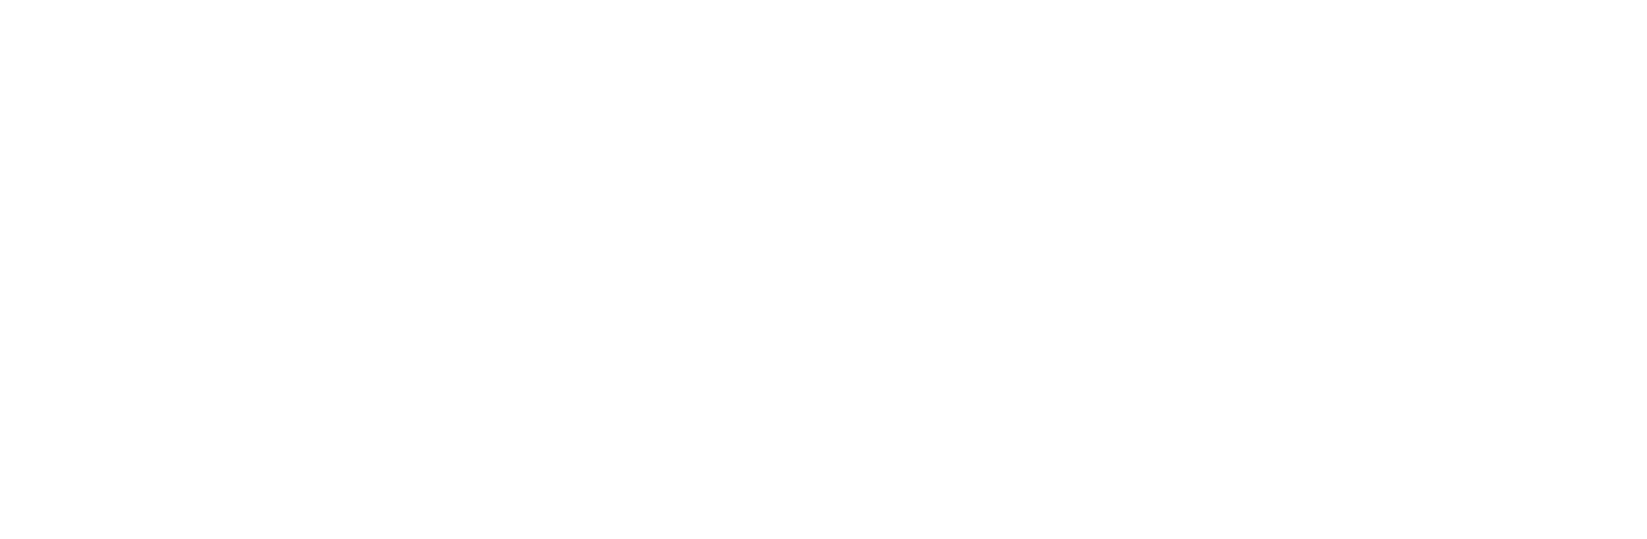 Zai Lab Logo groß für dunkle Hintergründe (transparentes PNG)